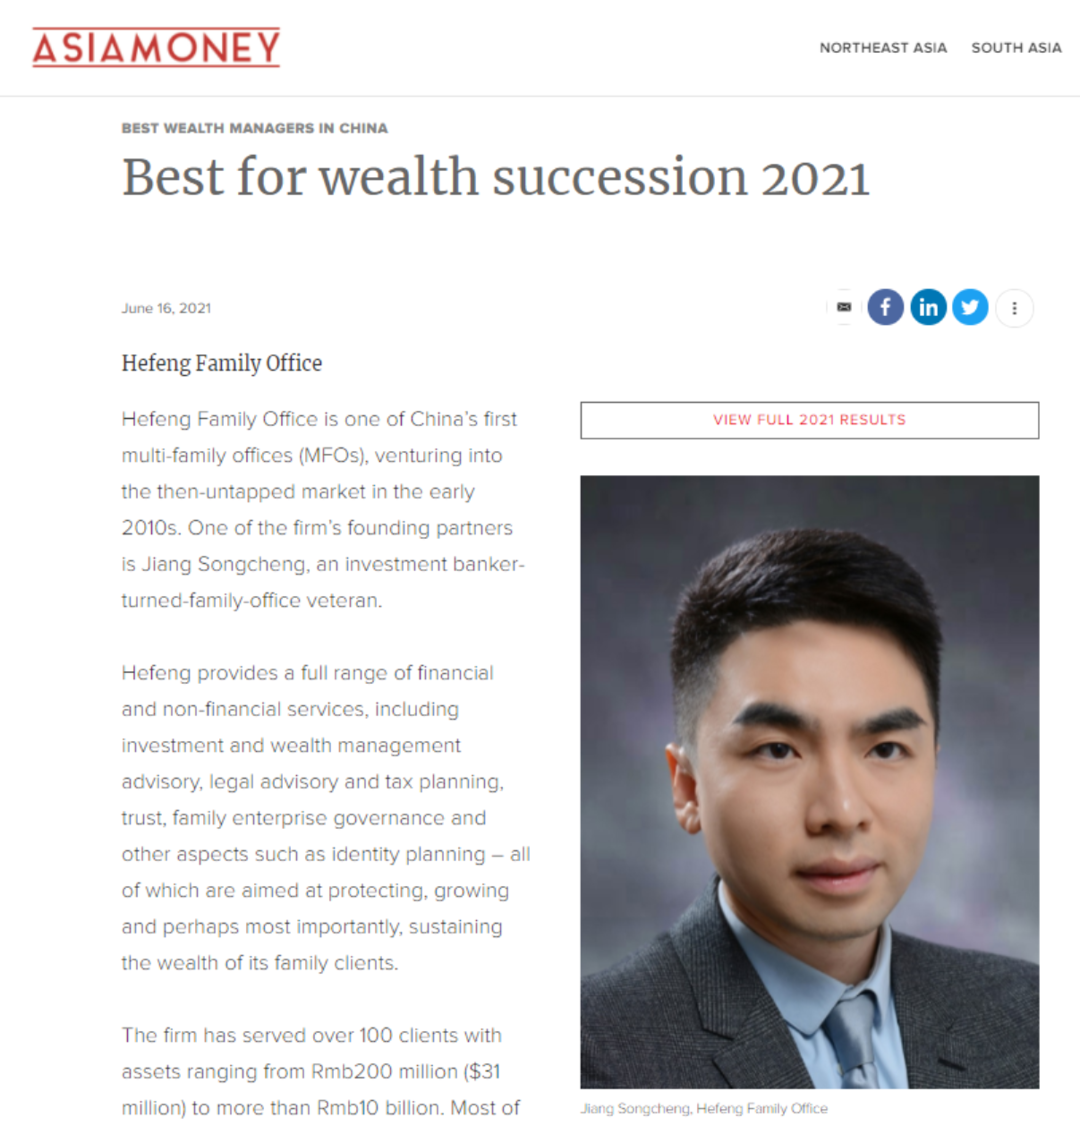 和丰家族办公室荣膺《亚洲货币》2021年度“最佳代际传承财富管理机构”奖项